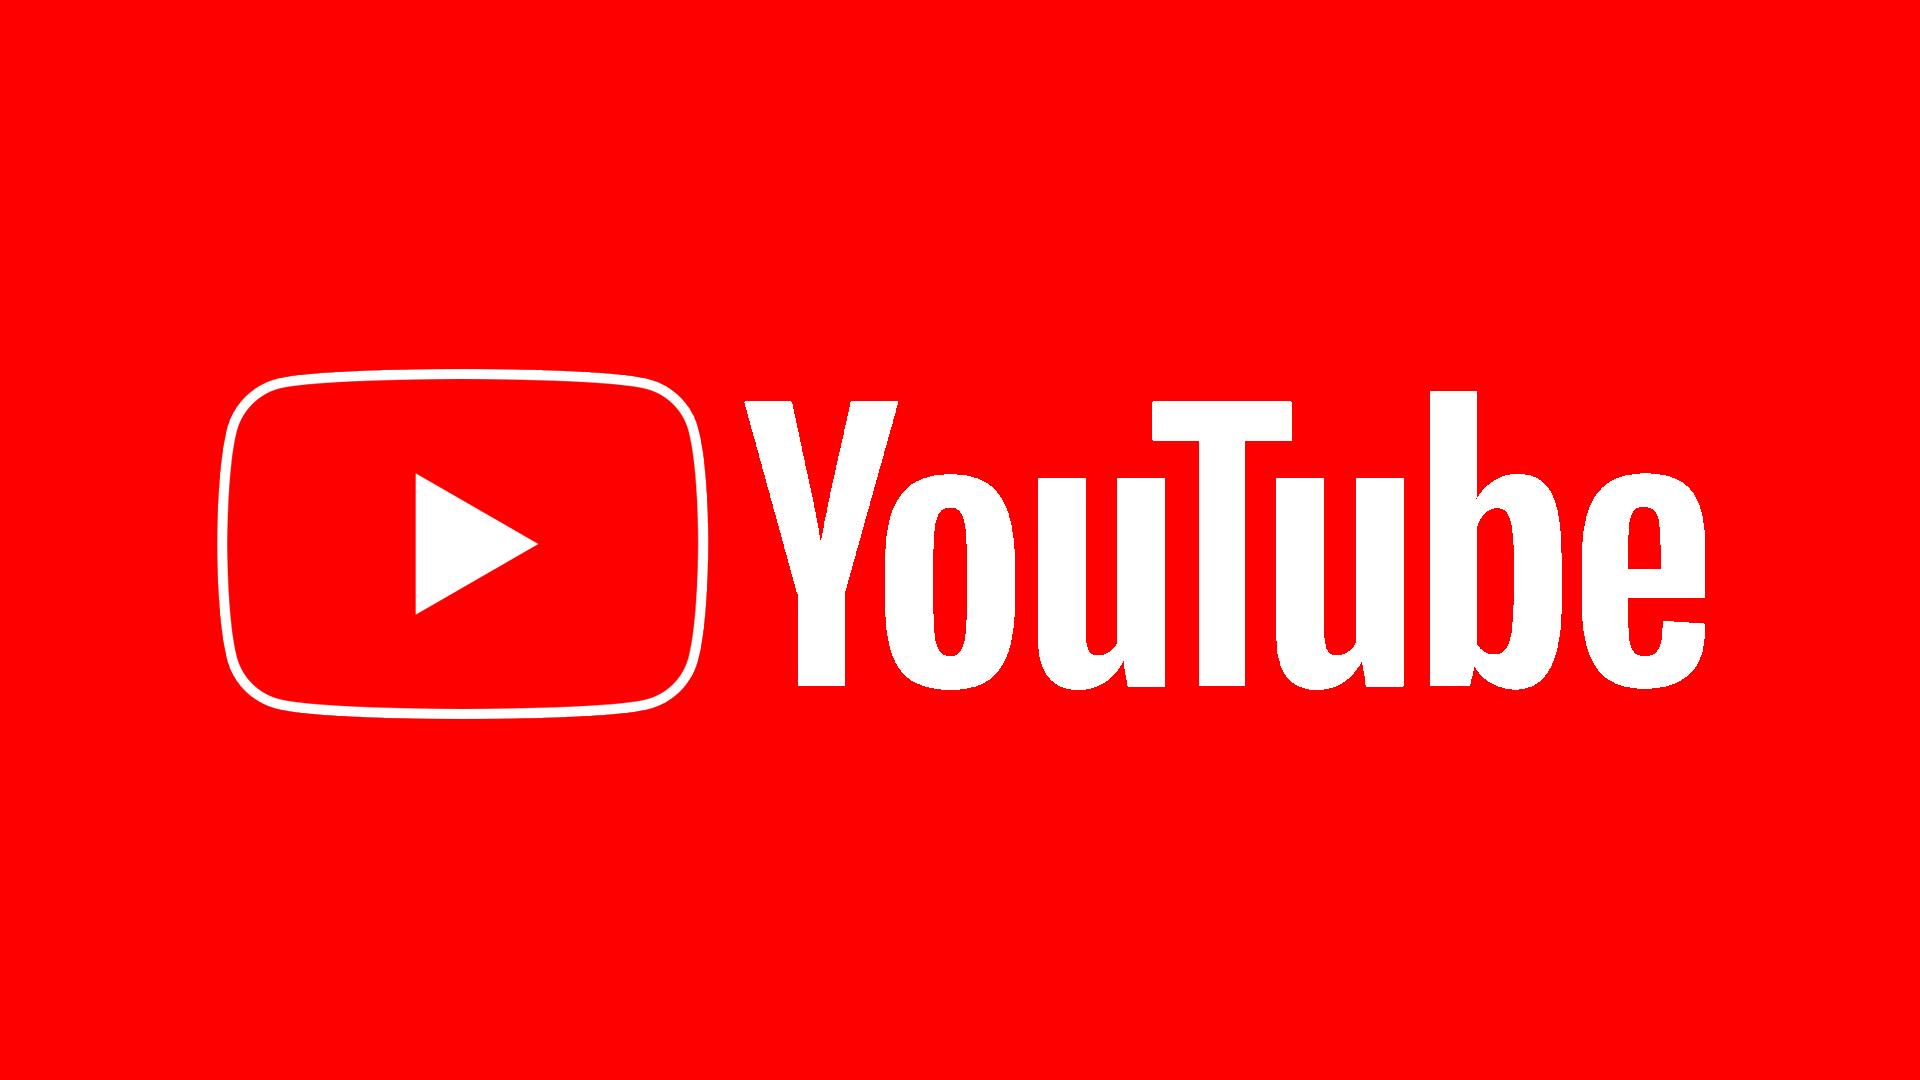 Le logo YouTube à partir de 2019.